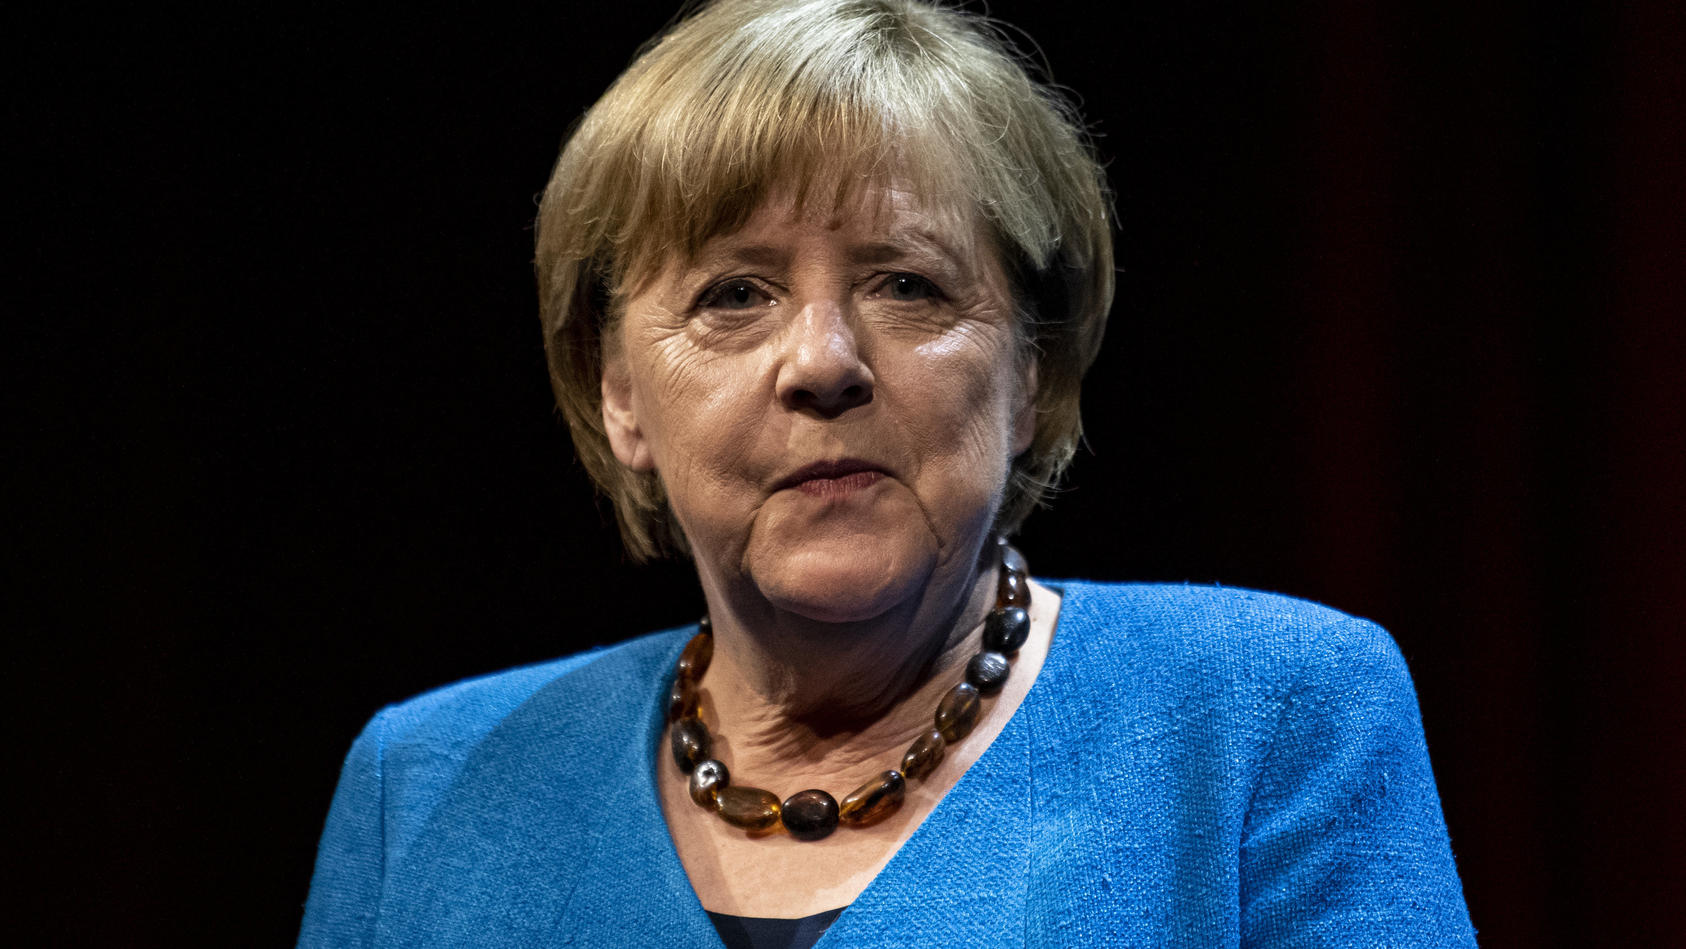 ARCHIV - 07.06.2022, Berlin: Die ehemalige Bundeskanzlerin Angela Merkel (CDU) steht im Berliner Ensemble. Merkel erhält den Nansen-Preis des UN-Flüchtlingshilfswerks (UNHCR). (zu dpa: «Angela Merkel bekommt Nansen-Preis des UN-Flüchtlingshilfswerks»